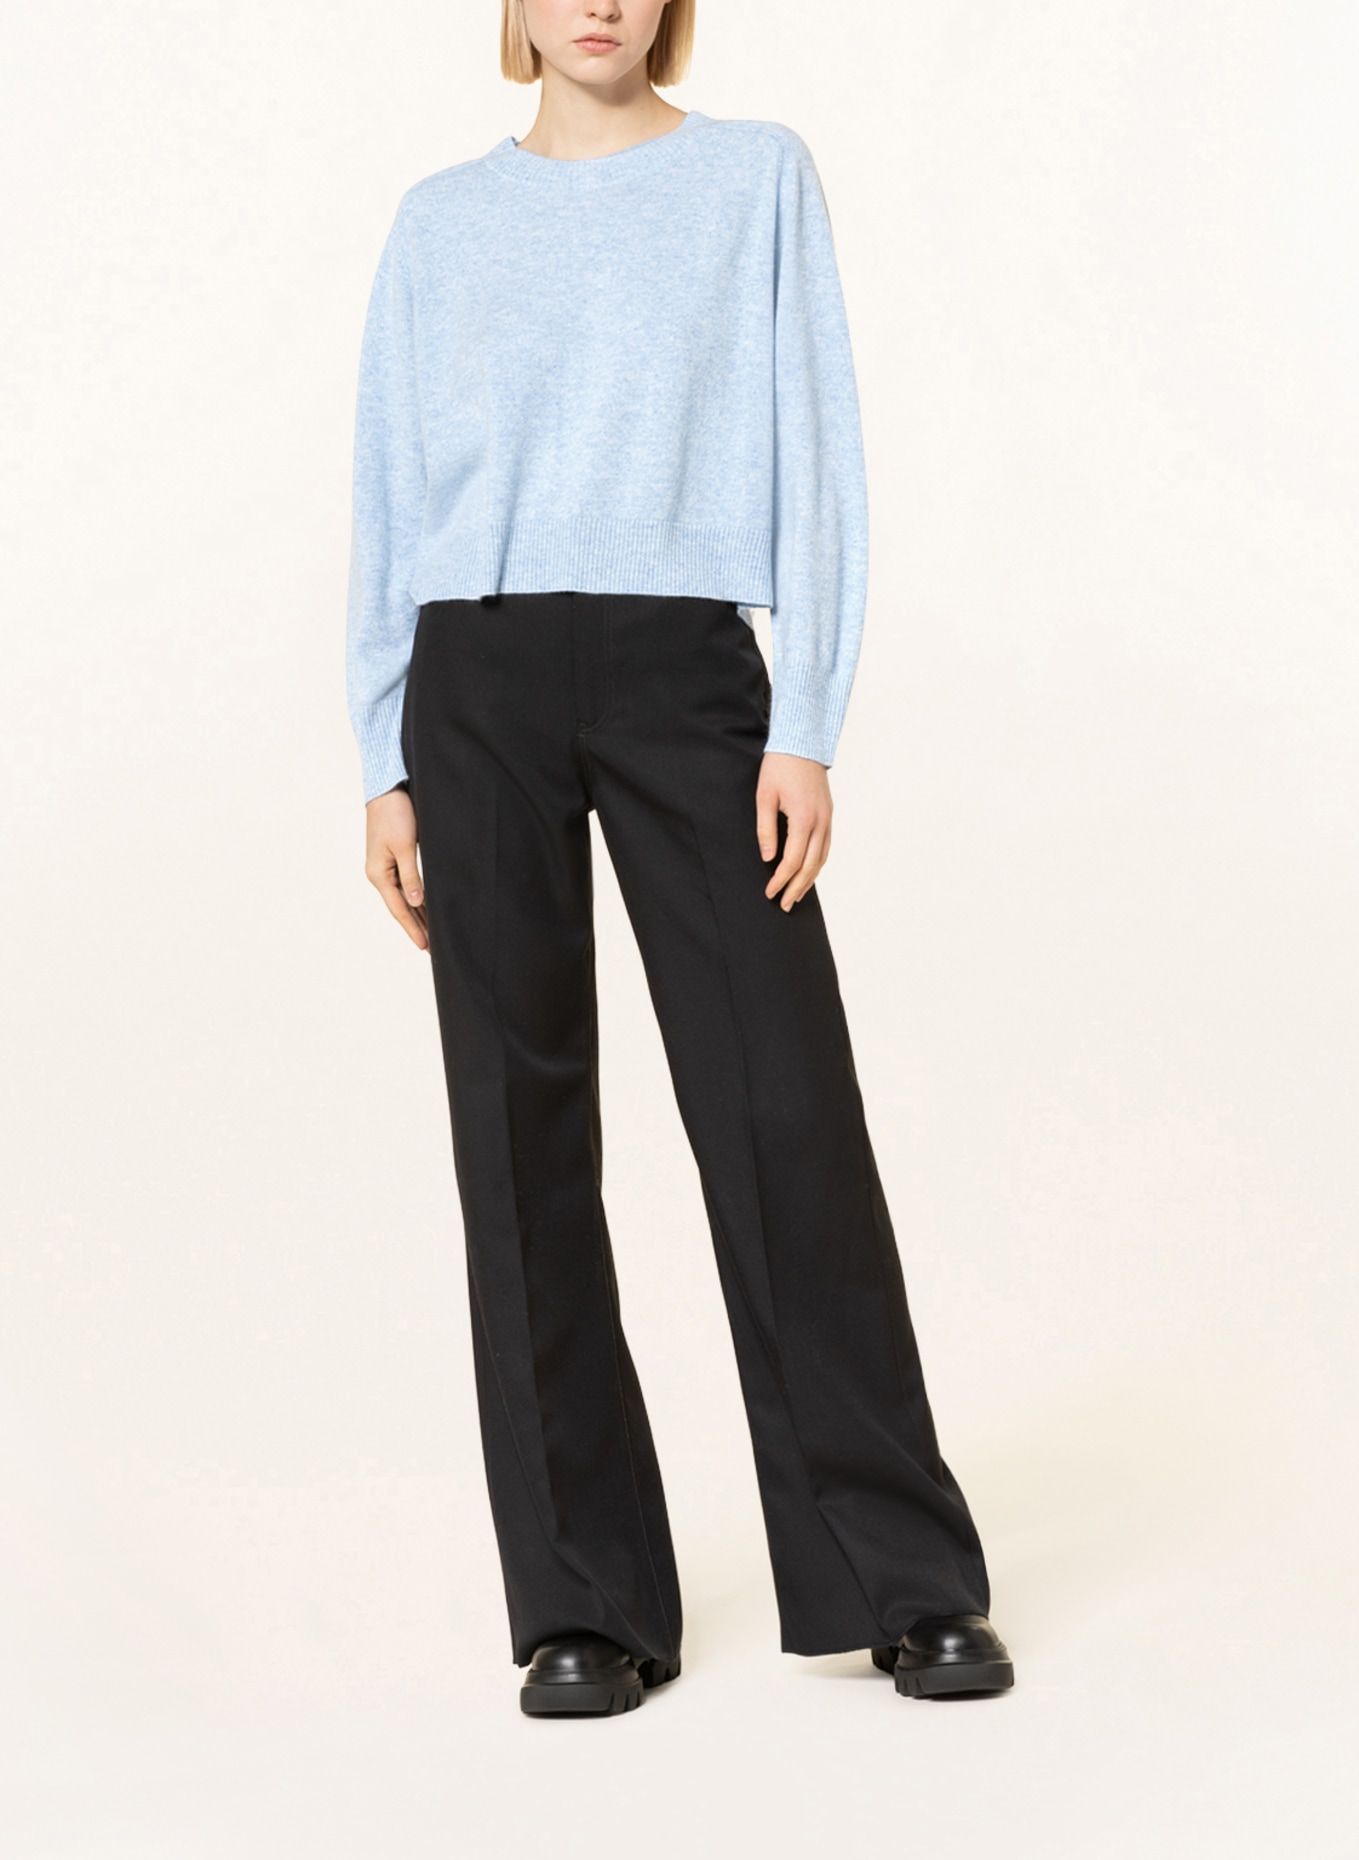 REPEAT Cashmere-Pullover, Farbe: HELLBLAU (Bild 2)